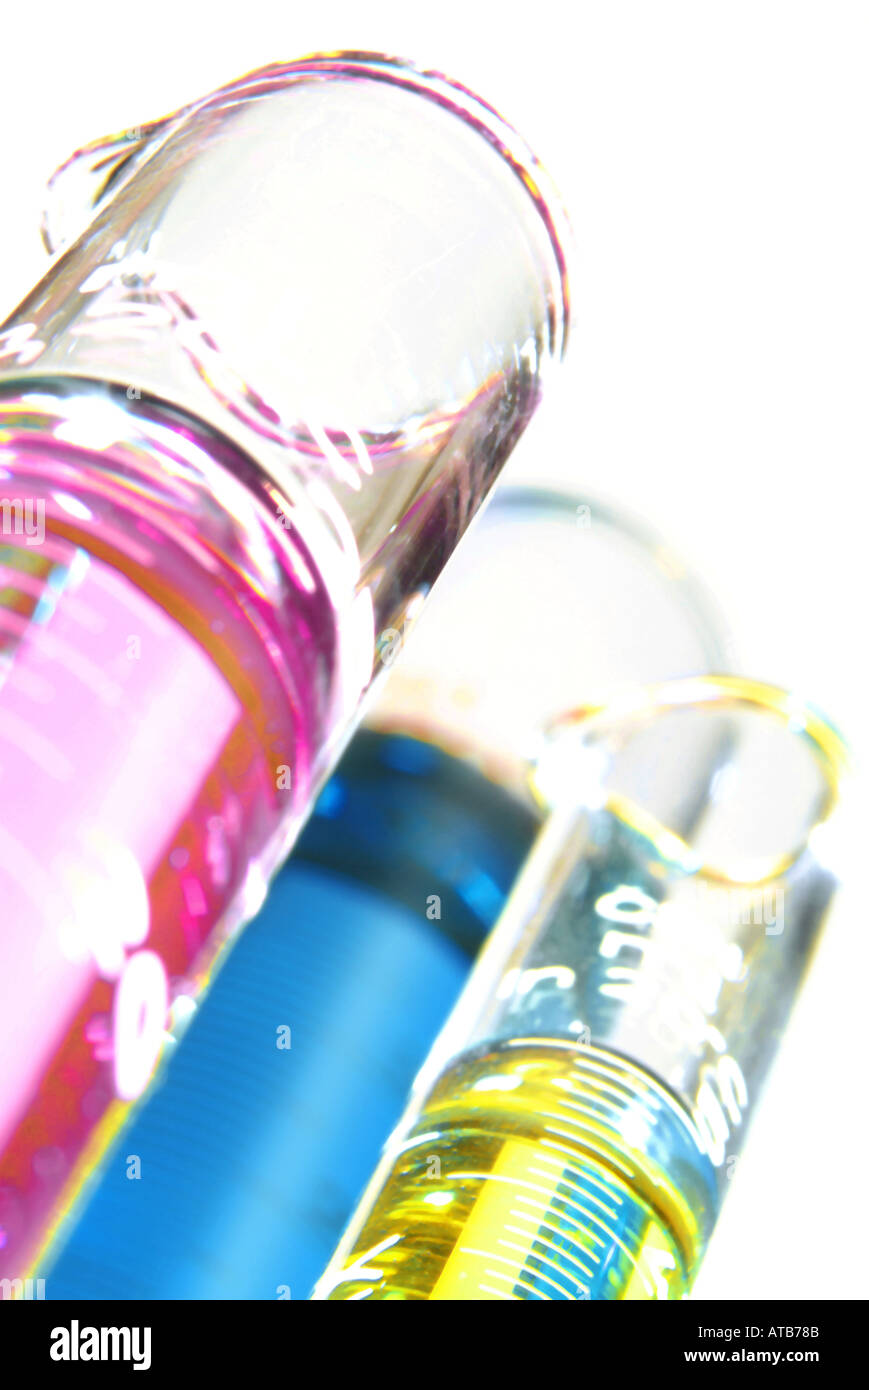 Chemie Glasmensuren mit verschiedenfarbigen Fluessigkeiten makro Stock Photo